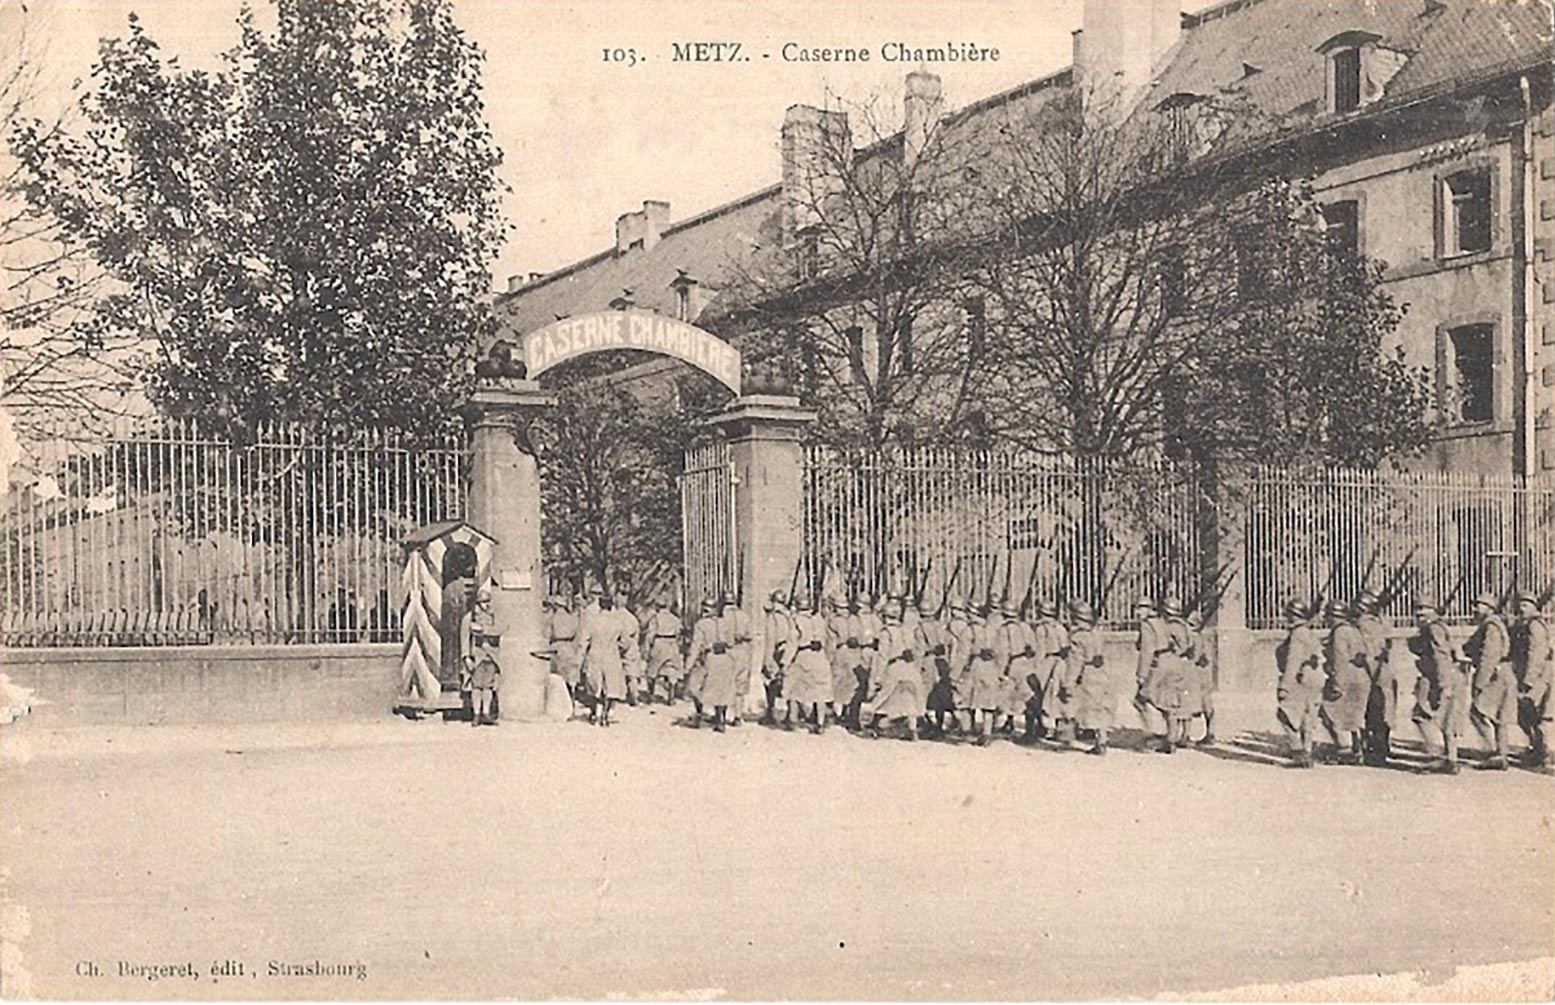 Ligne Maginot - Caserne Chambières - Caserne Chambières à Metz
Carte postale